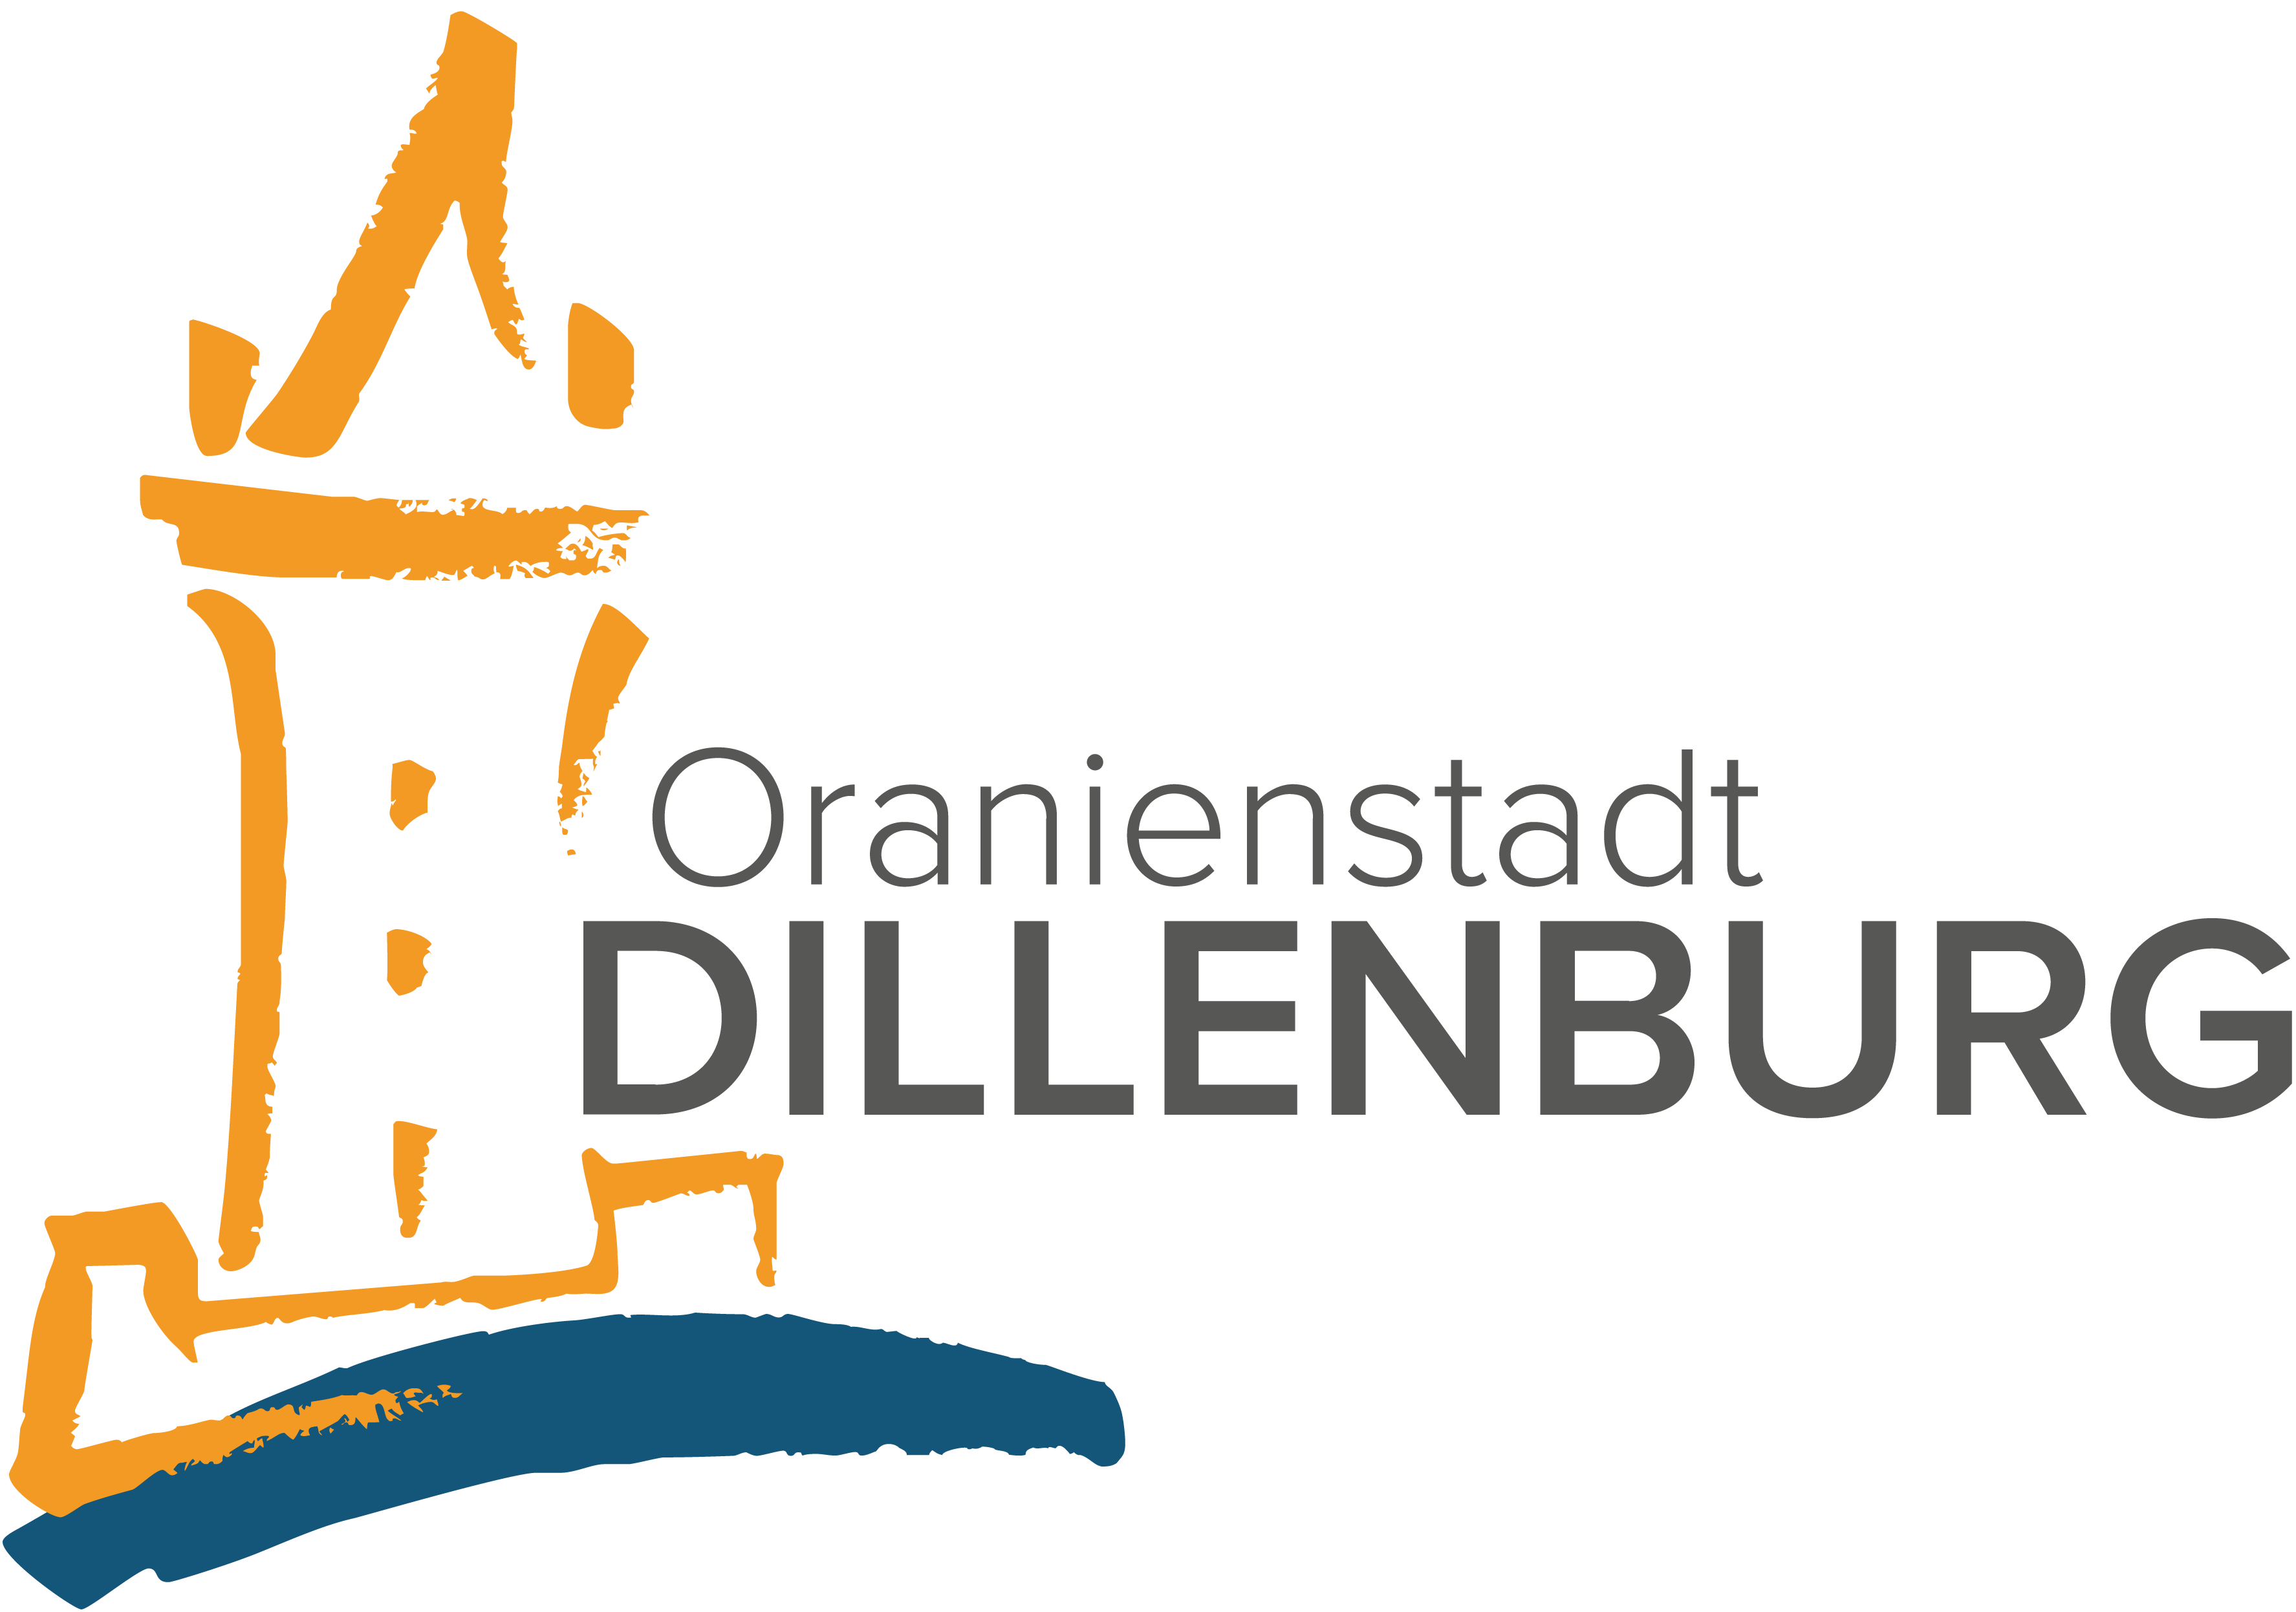 Logo der Oranienstadt Dillenburg. Stilisiert in orange steht der Wilhelmsturm auf der linken Bildseite, darunter ist in blau, wie mit einem Pinselstrich gezogen, eine gebogene blaue Linie zu sehen, die den Fluss Dill darstellen soll. Rechts neben dem orangenen Wilhelmsturm stehen in dunkelgrauer Schrift die Worte Oranienstadt Dillenburg.